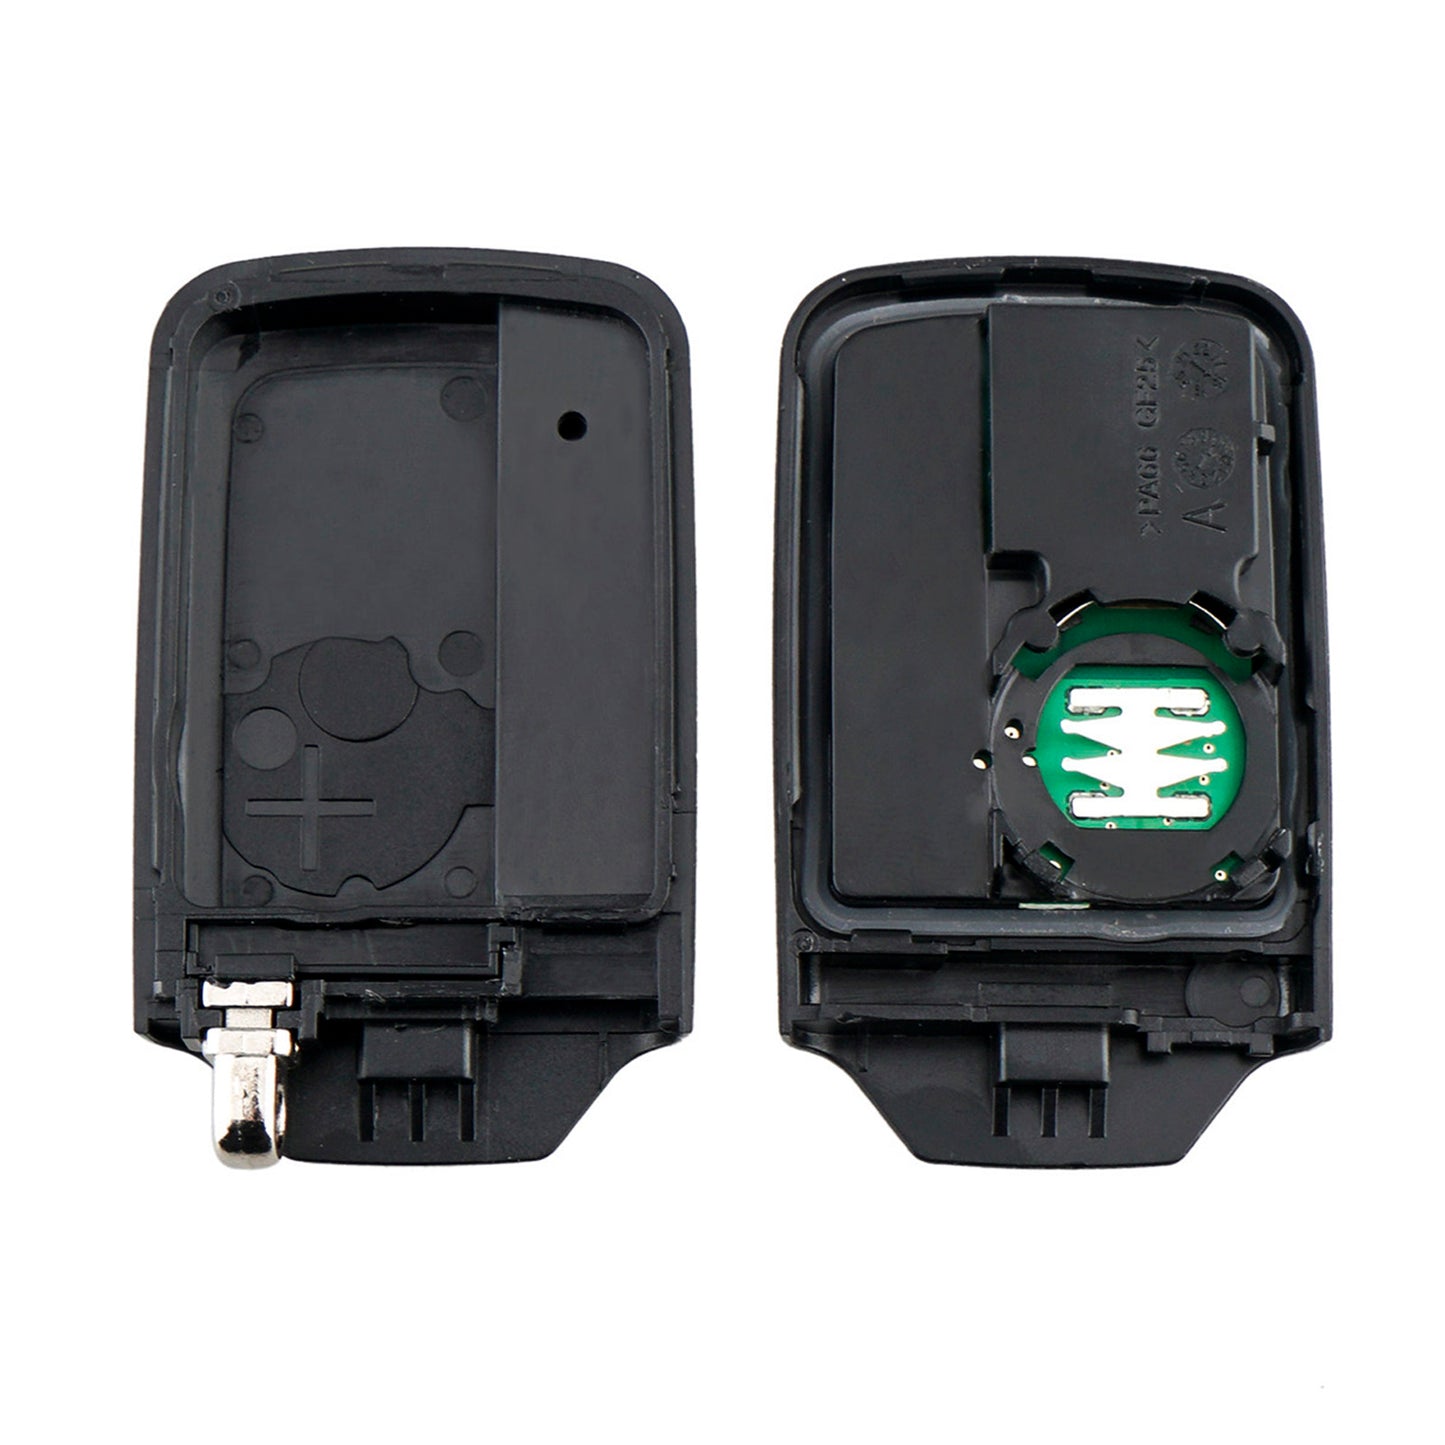 3 Buttons 314.8MHz Keyless Entry Fob Remote Car Key For 2013 - 2015 Honda Crosstour FCC ID:ACJ932HK1210A SKU : J751